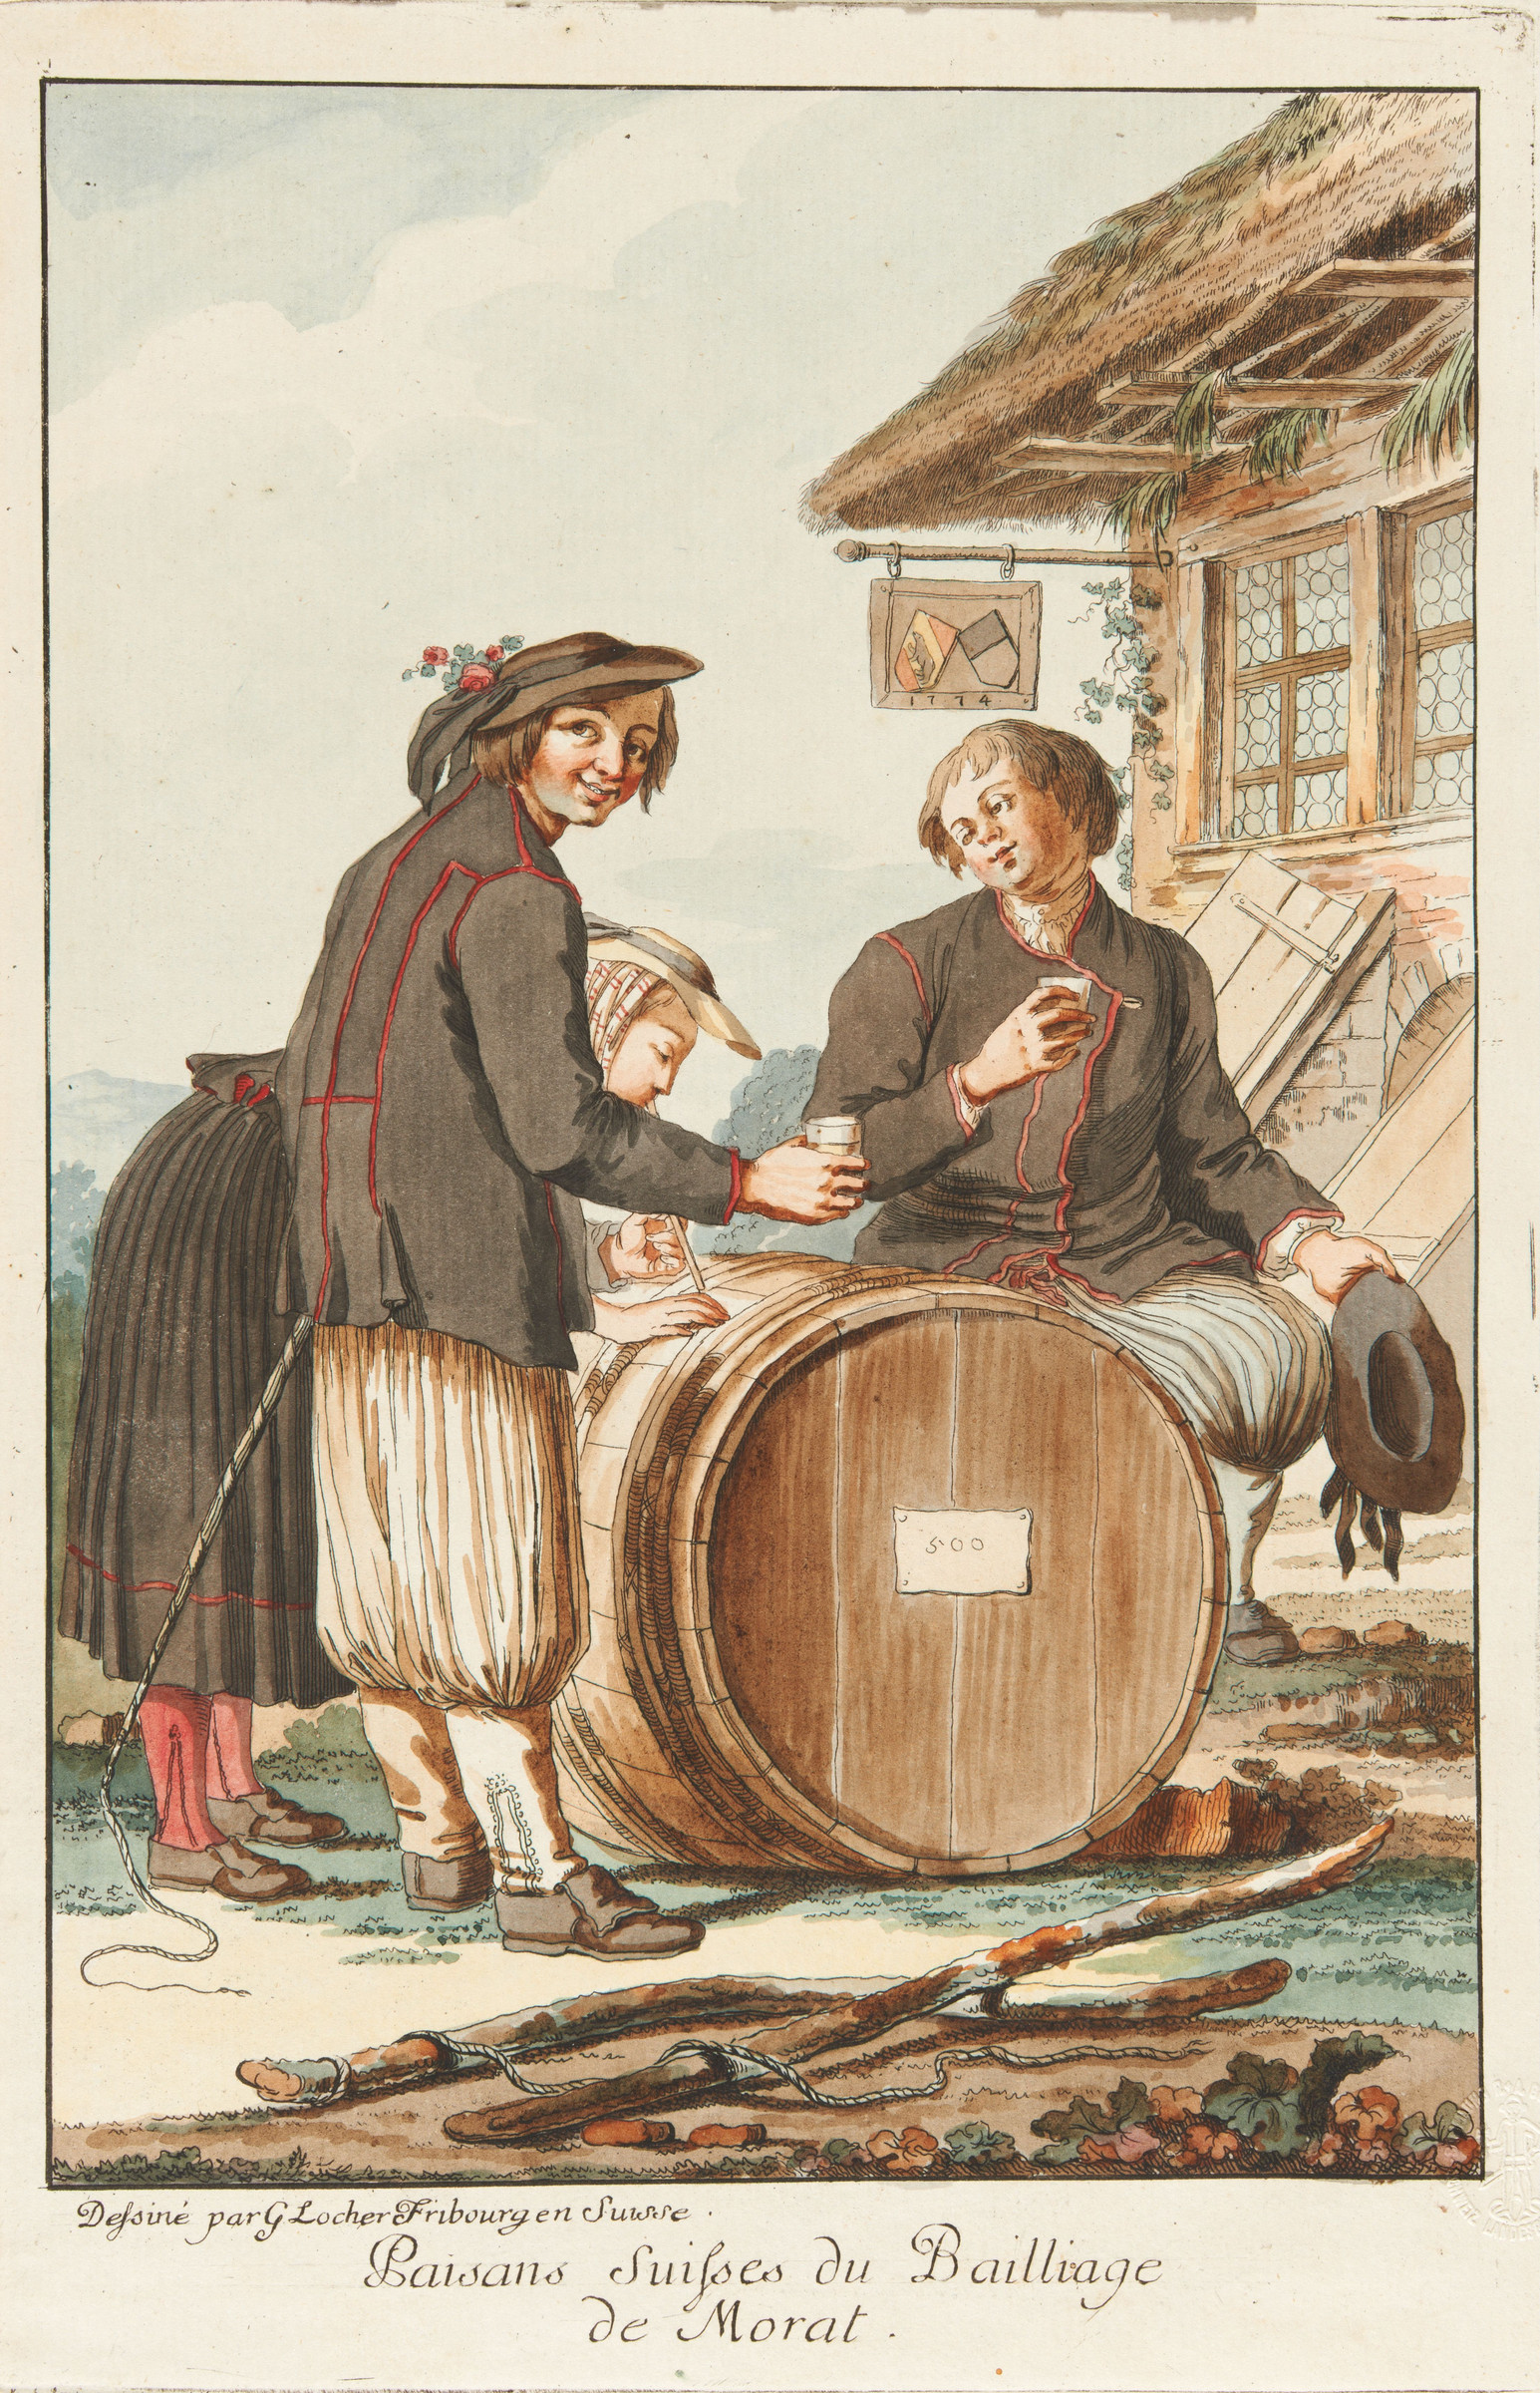 Due uomini e una donna in costume tradizionale di Morat degustano del vino su una botte davanti a un ostello